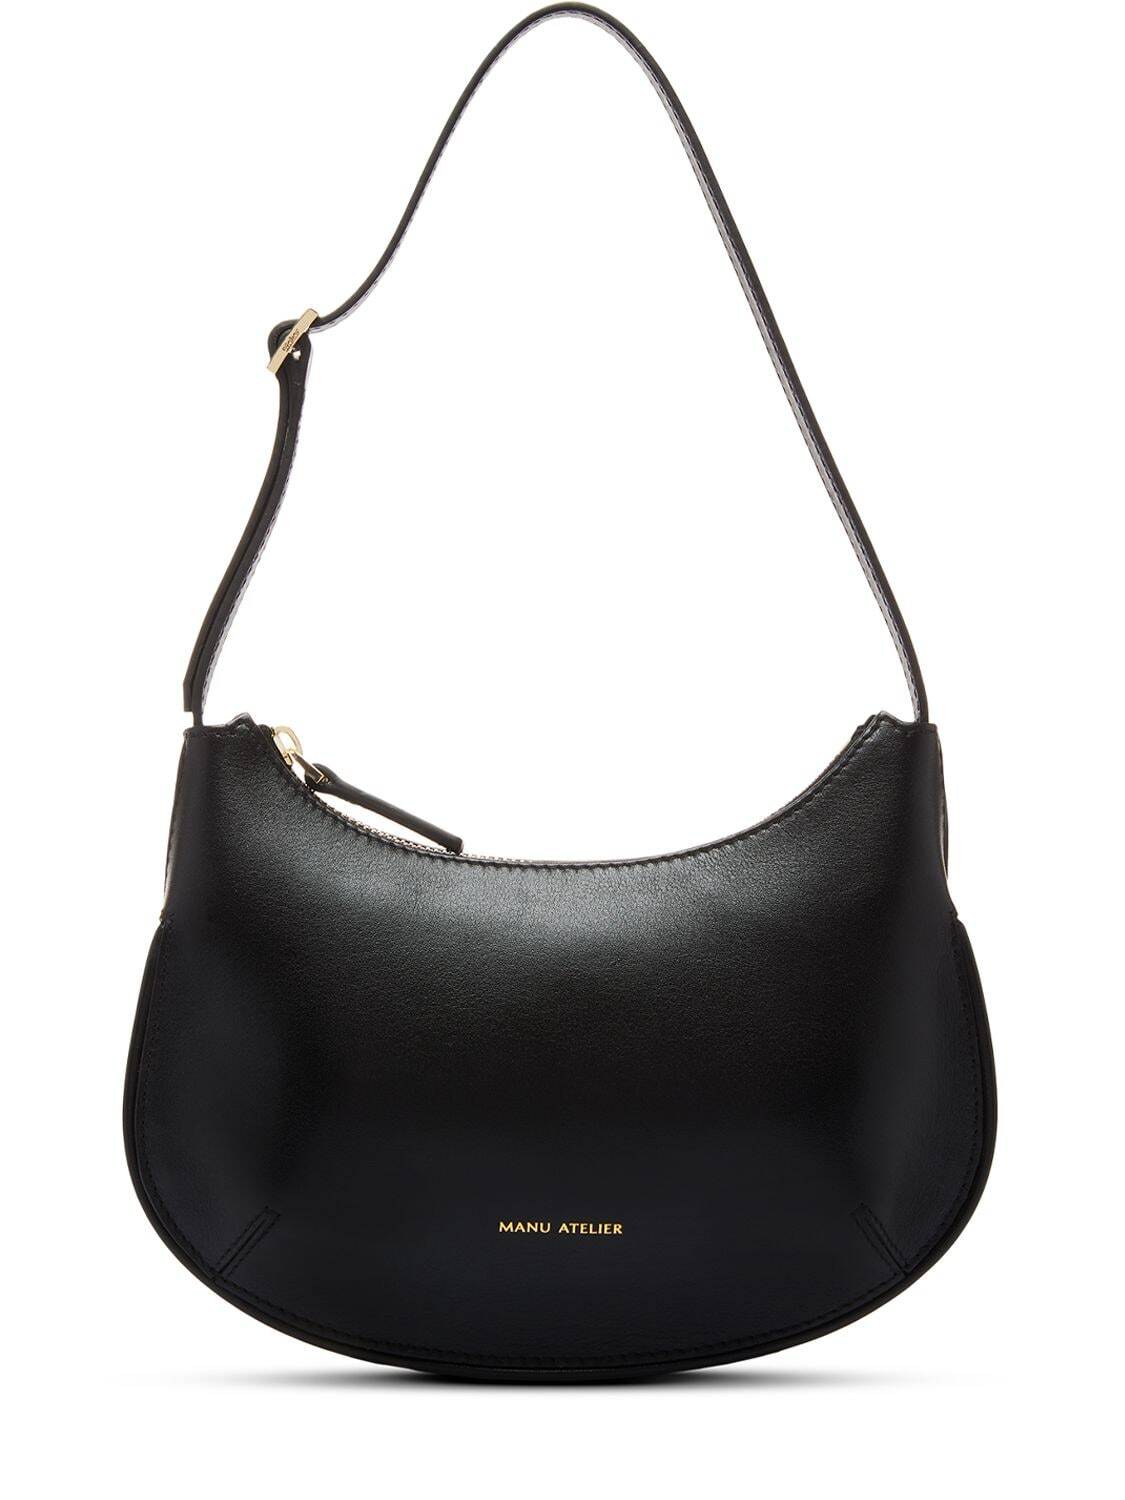 MANU ATELIER Ilda Leather Shoulder Bag in black